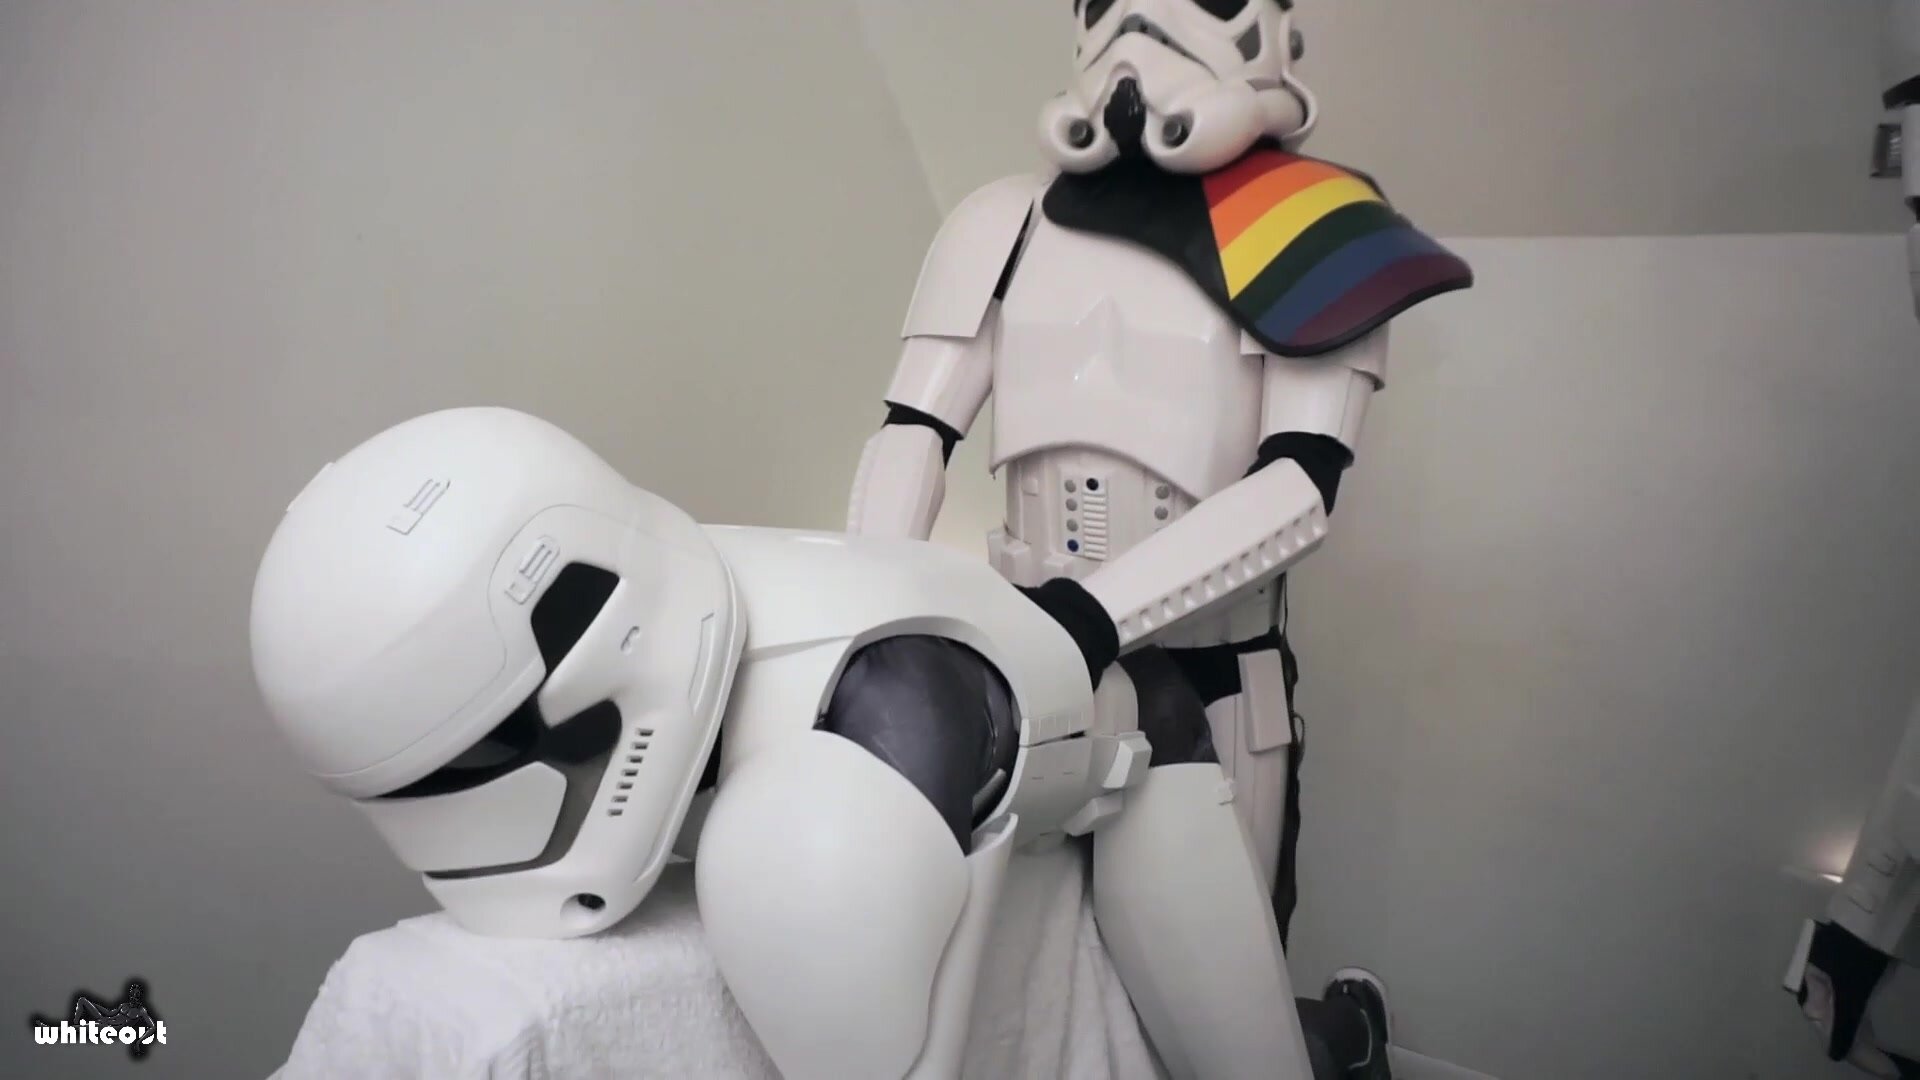 Star Wars Stormtrooper Porn - Stormtrooper Fuck - ThisVid.com